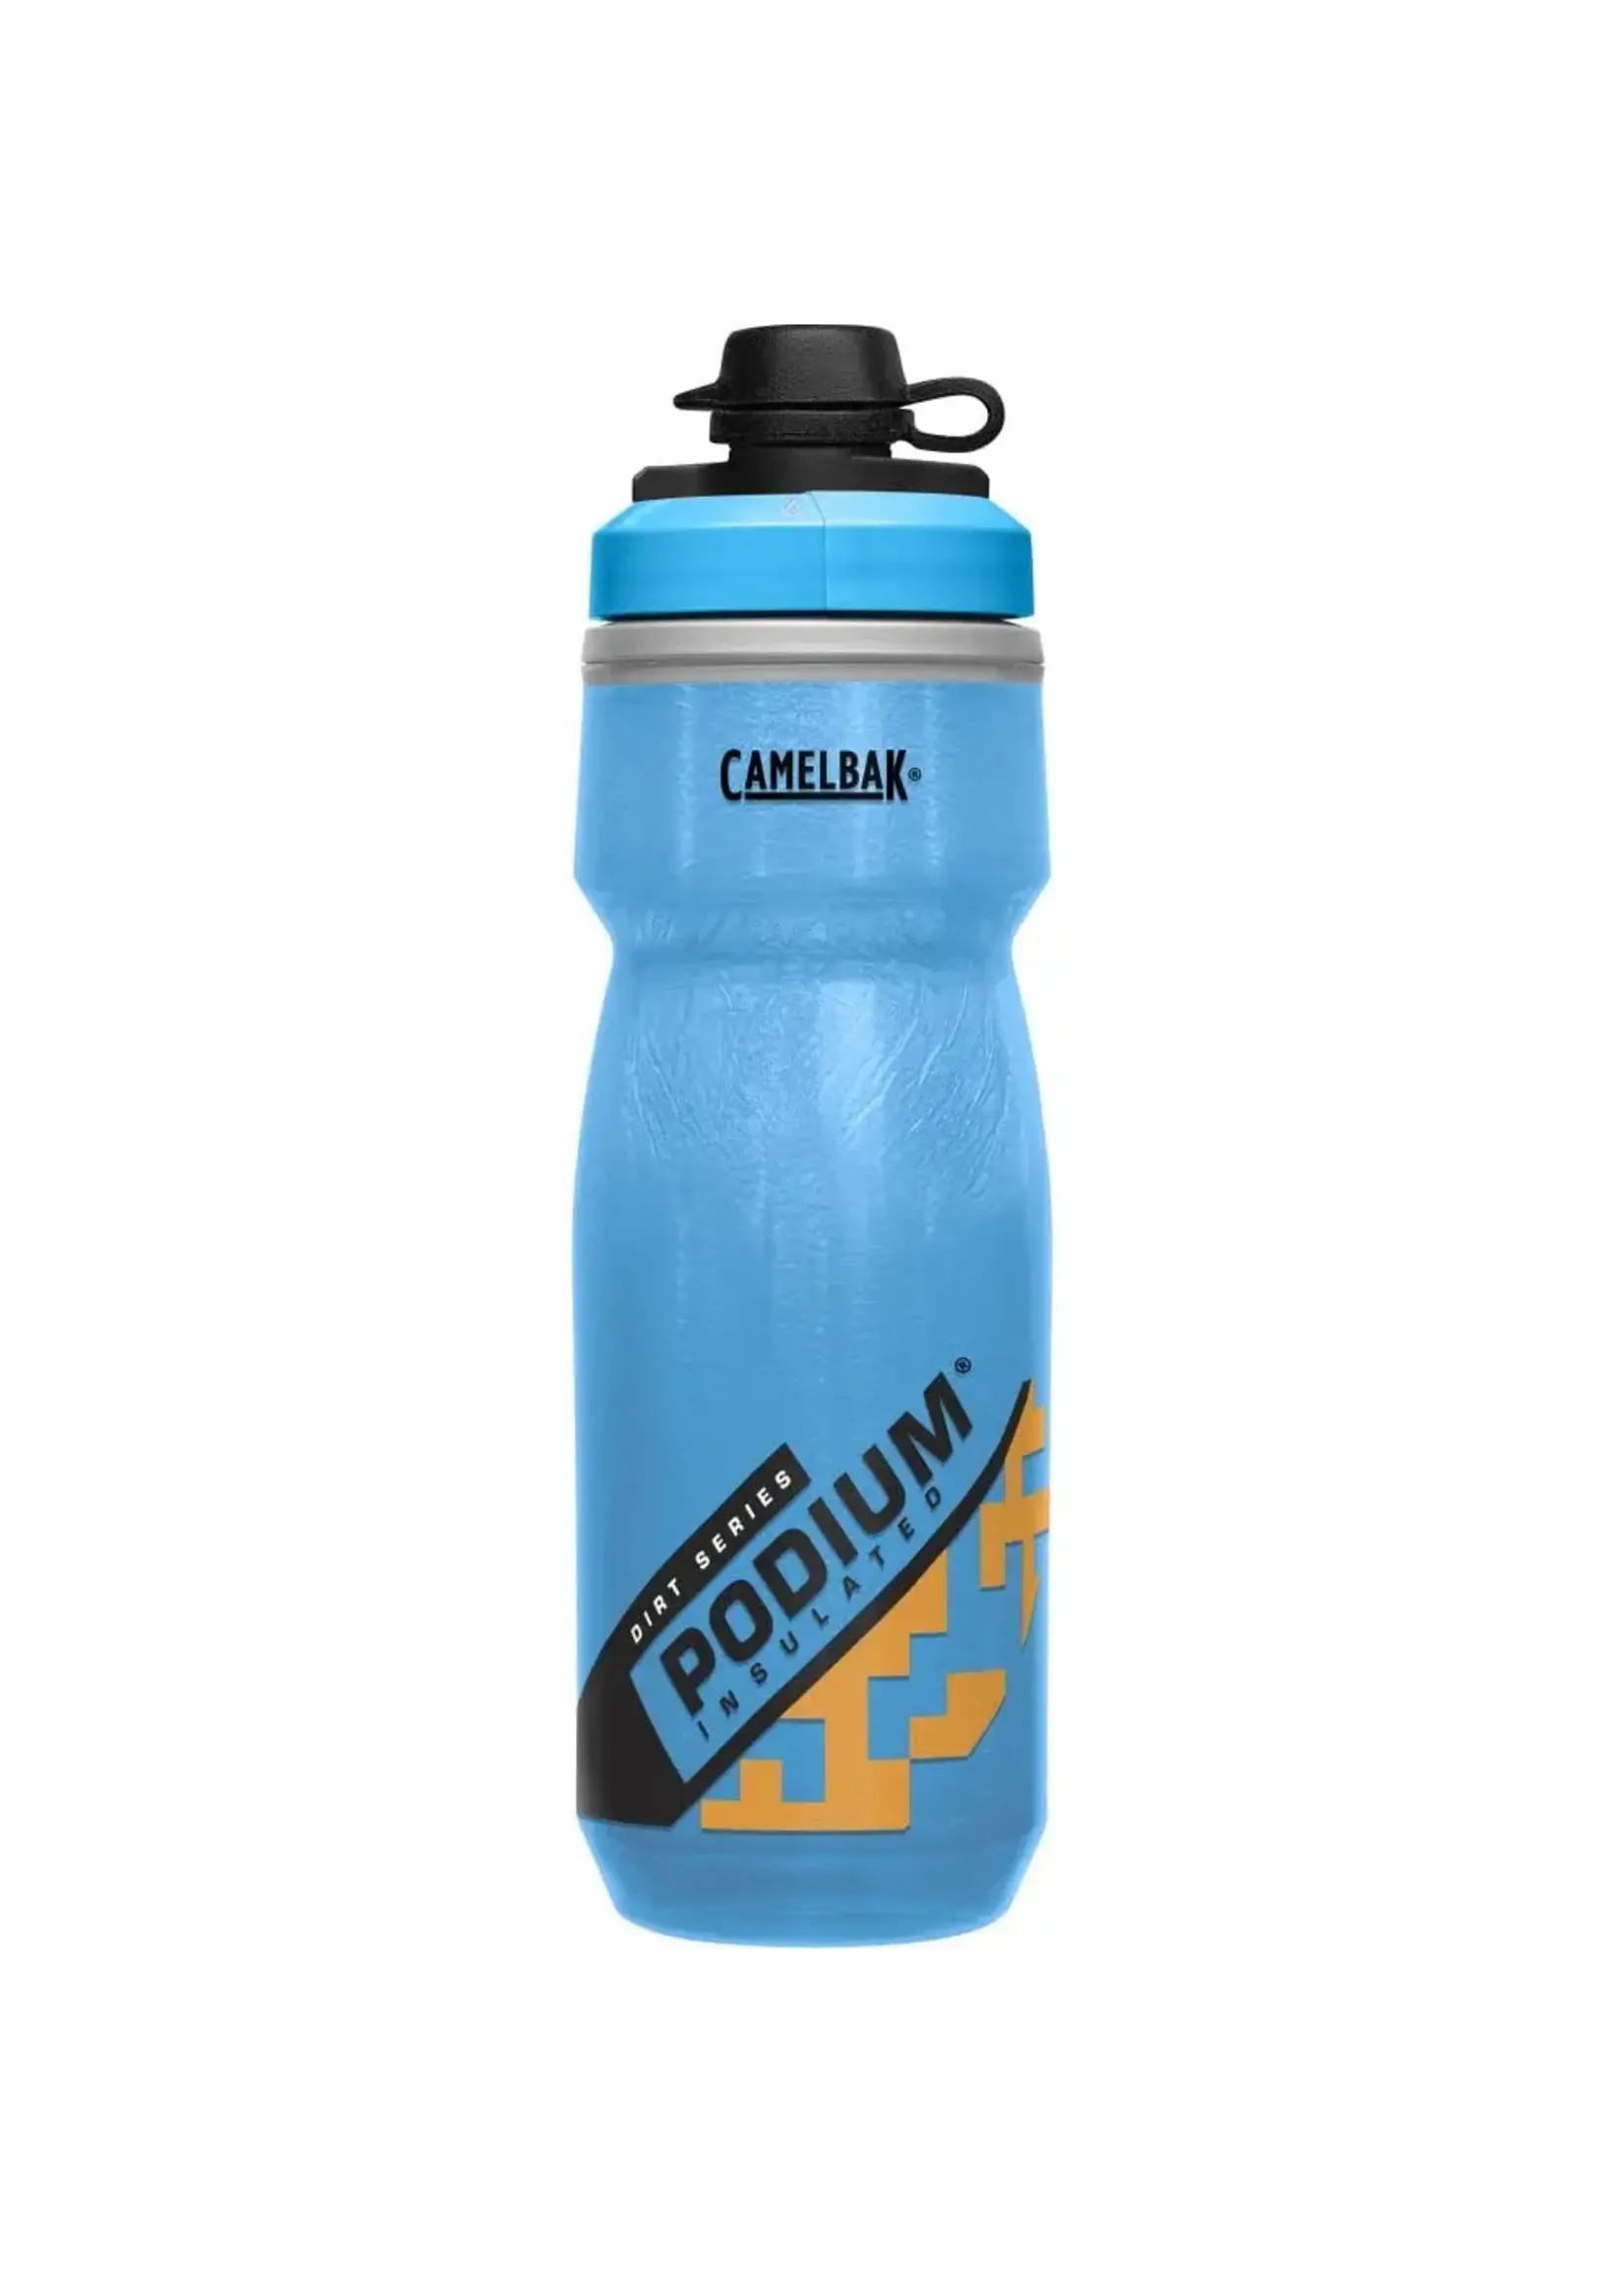 https://cdn.shoplightspeed.com/shops/634730/files/56680382/1652x2313x2/camelbak-podium-dirt-chill-30-21-ozs-bottle.jpg